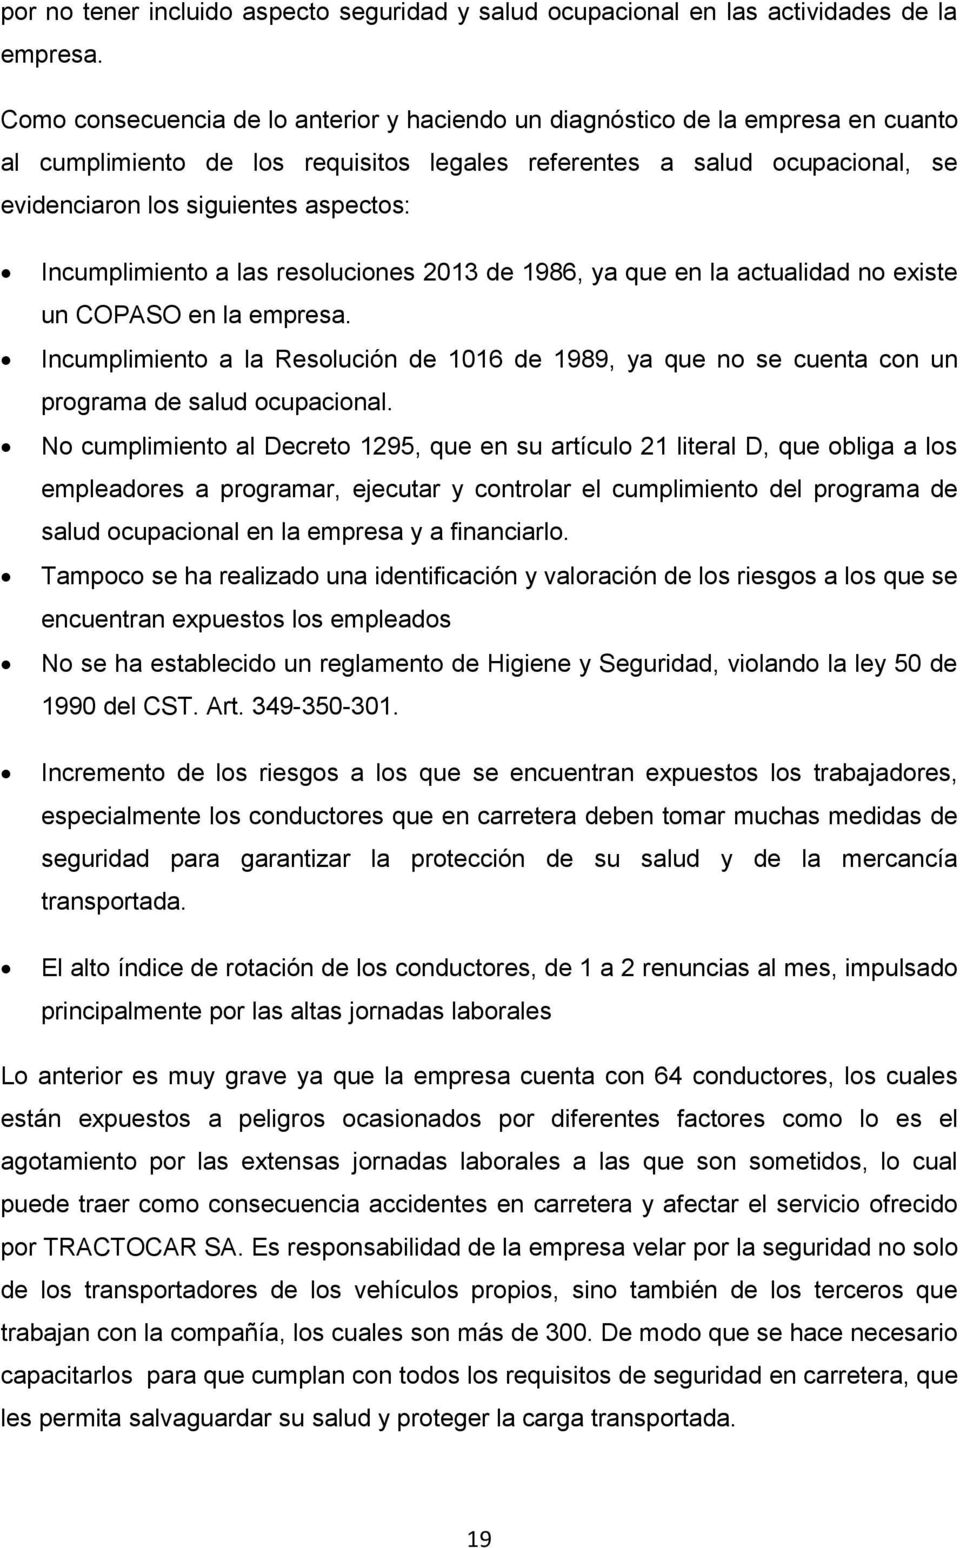 Incumplimiento a las resoluciones 2013 de 1986, ya que en la actualidad no existe un COPASO en la empresa.